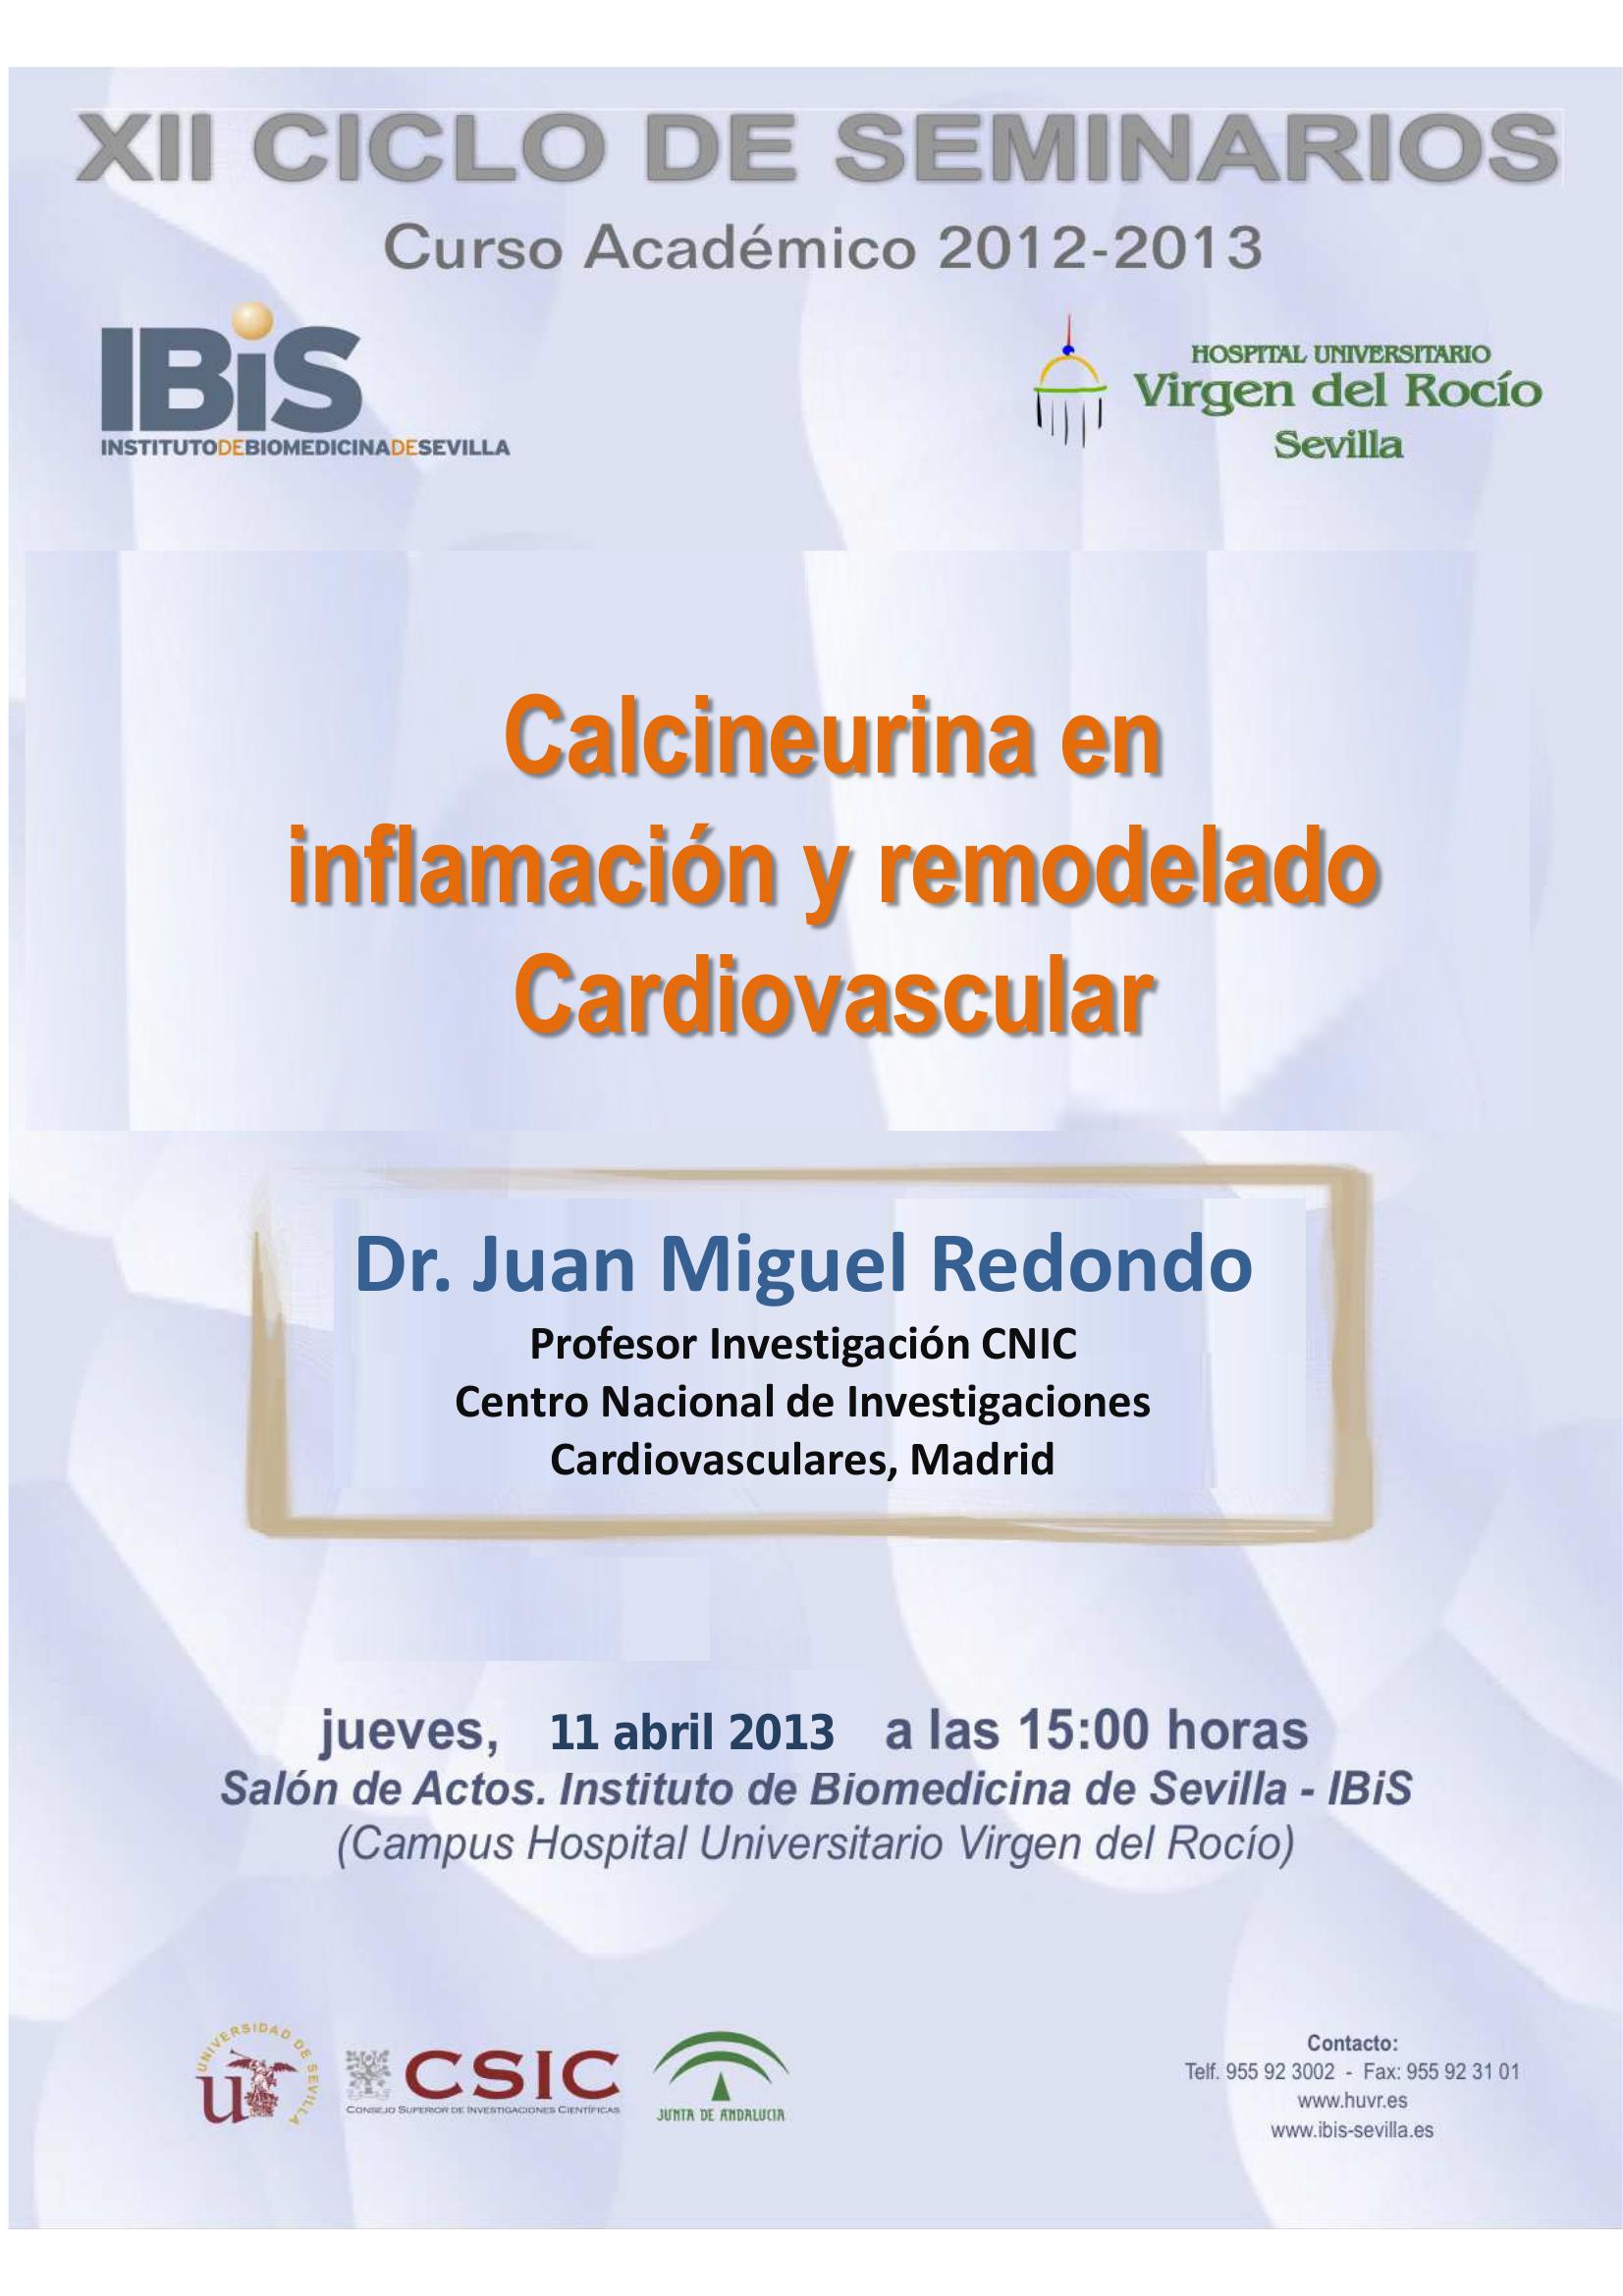 Poster: Calcineurina en inflamación y remodelado Cardiovascular